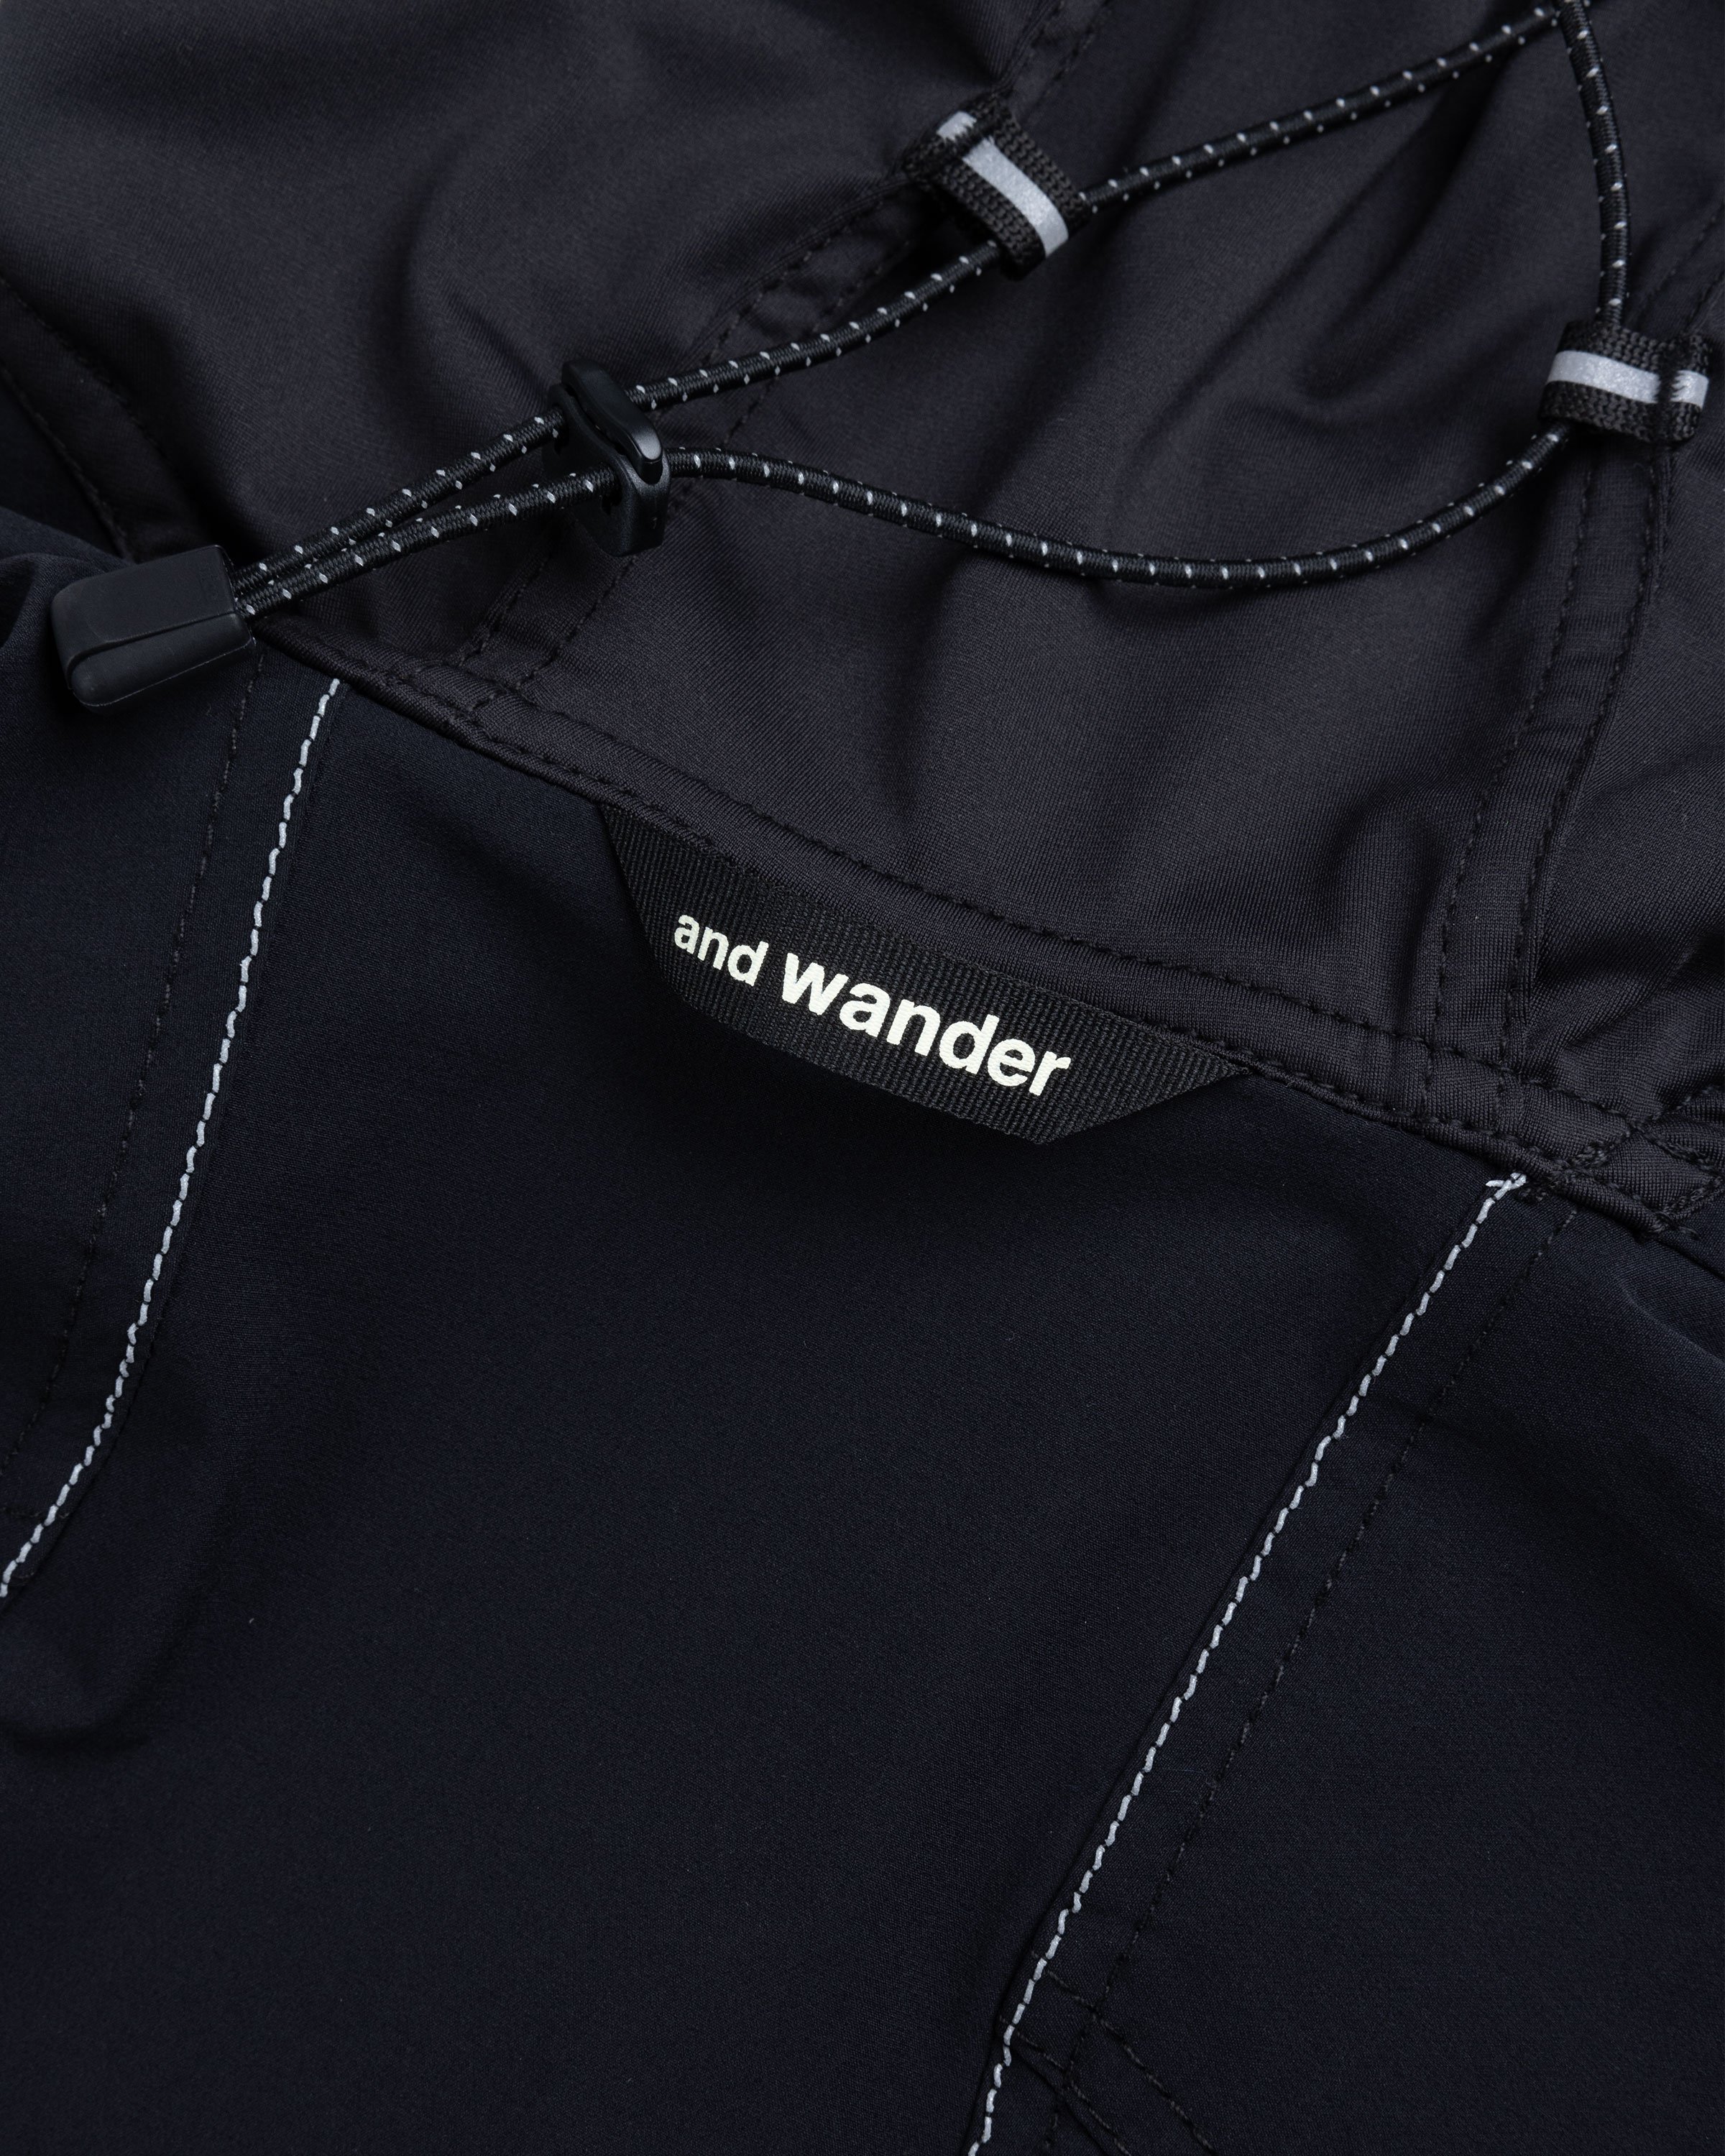 And Wander - 7 t r e k j a c k e t 3 - Clothing - Black - Image 7